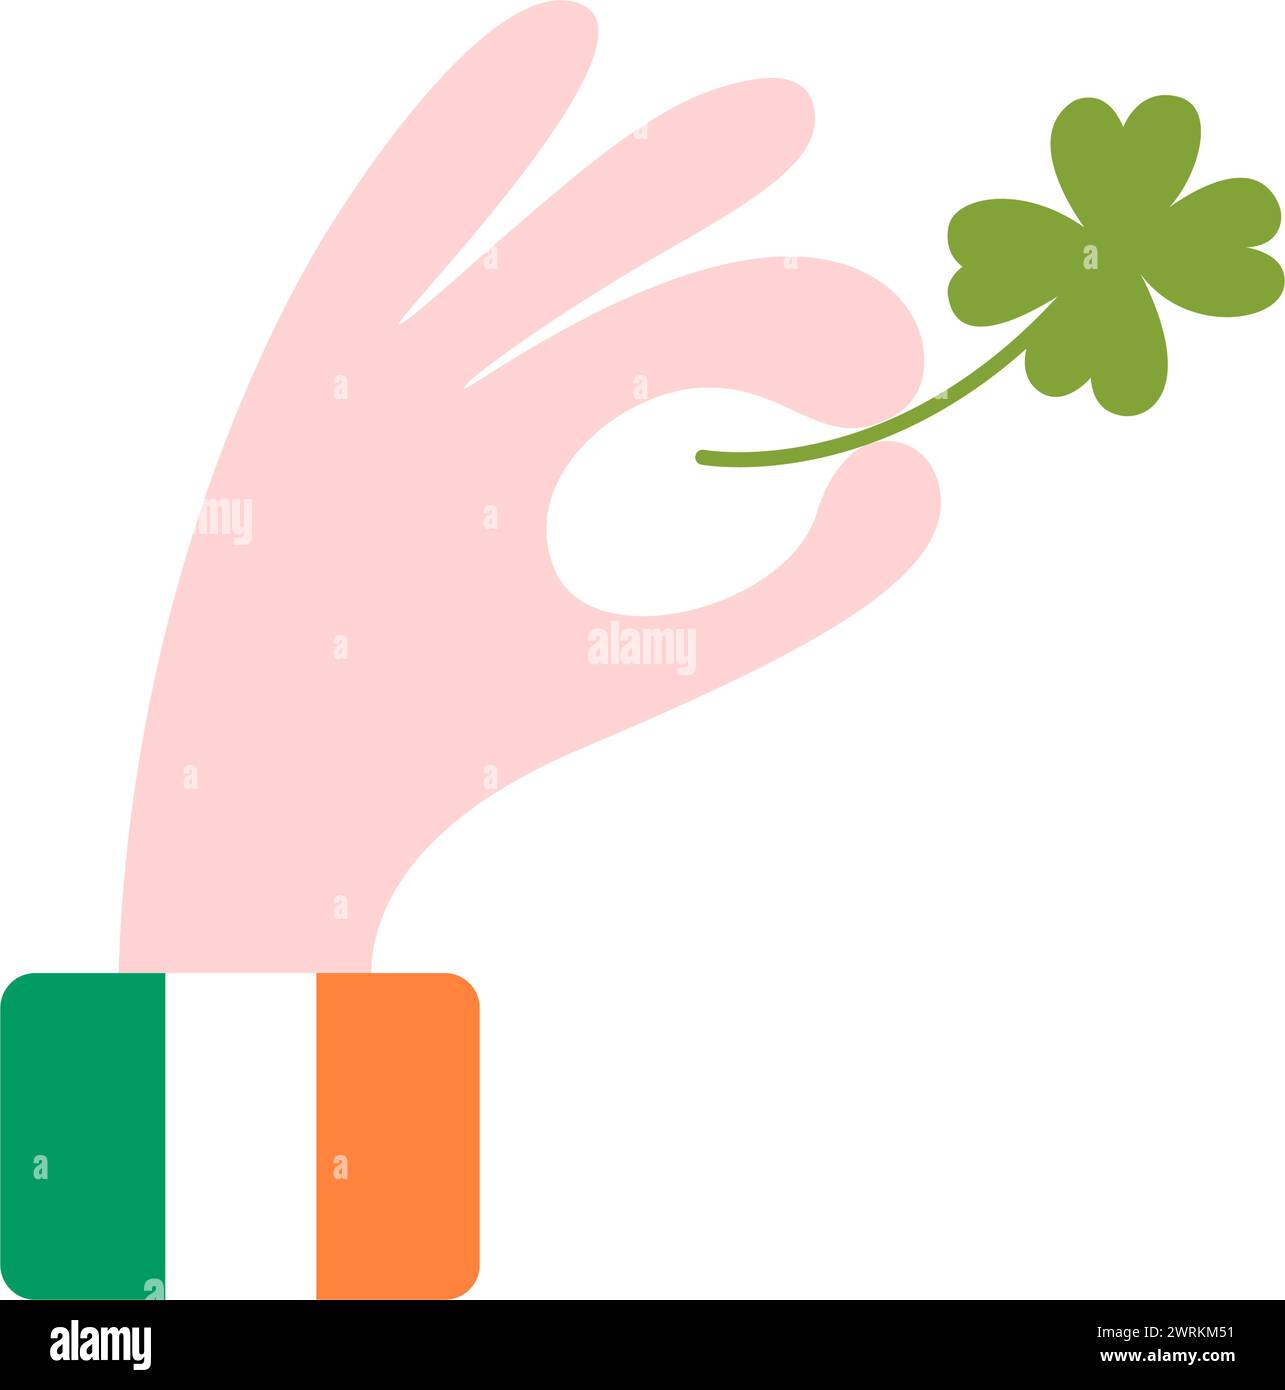 St. Patrick's Day. Shamrock mit vier Blättern in der Hand, Farben der irischen Flagge auf dem Hemdärmel. Isoliertes Element Stock Vektor